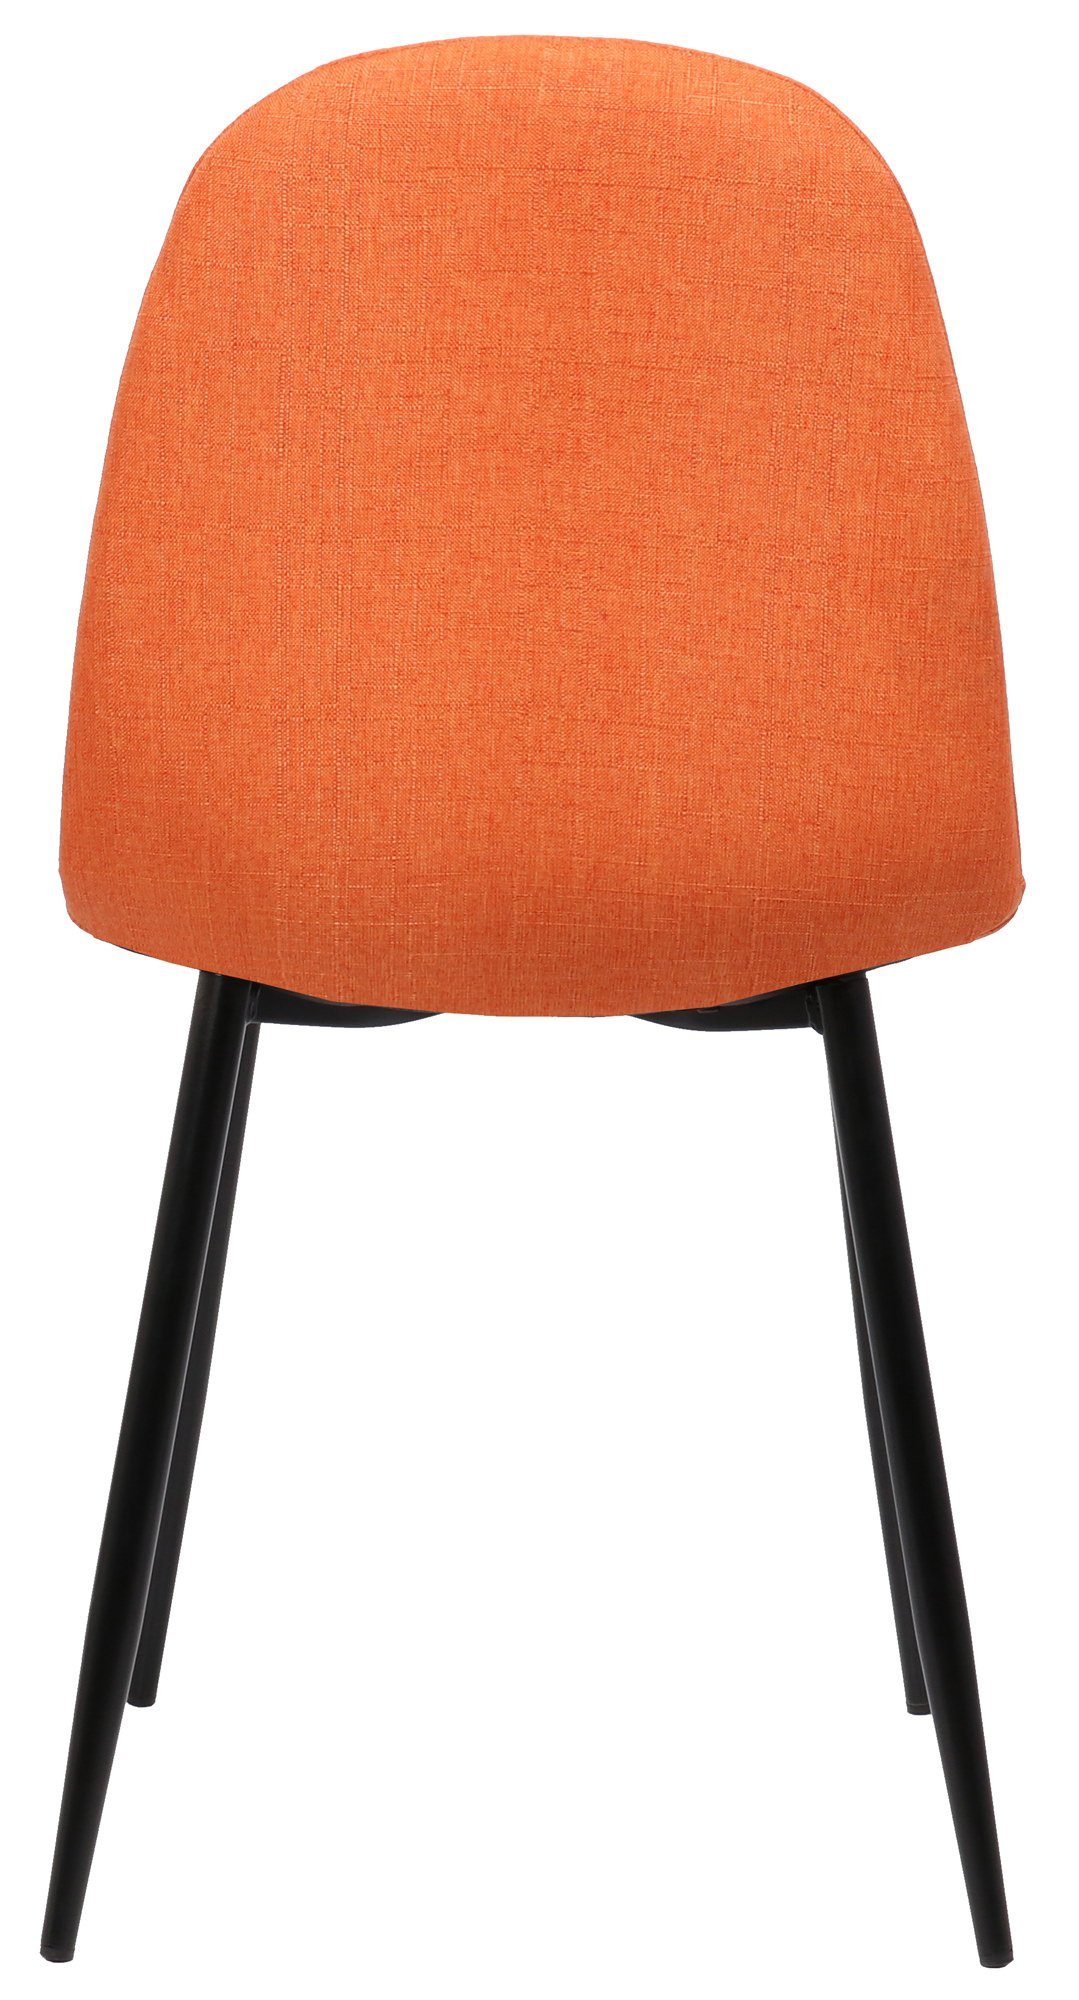 Stoff mit Gestell: Naples orange (Küchenstuhl Metall Sitzfläche Polsterstuhl), - - gepolsterter schwarz Konferenzstuhl Wohnzimmerstuhl - Esszimmerstuhl - Esstischstuhl TPFLiving - Sitzfläche: hochwertig